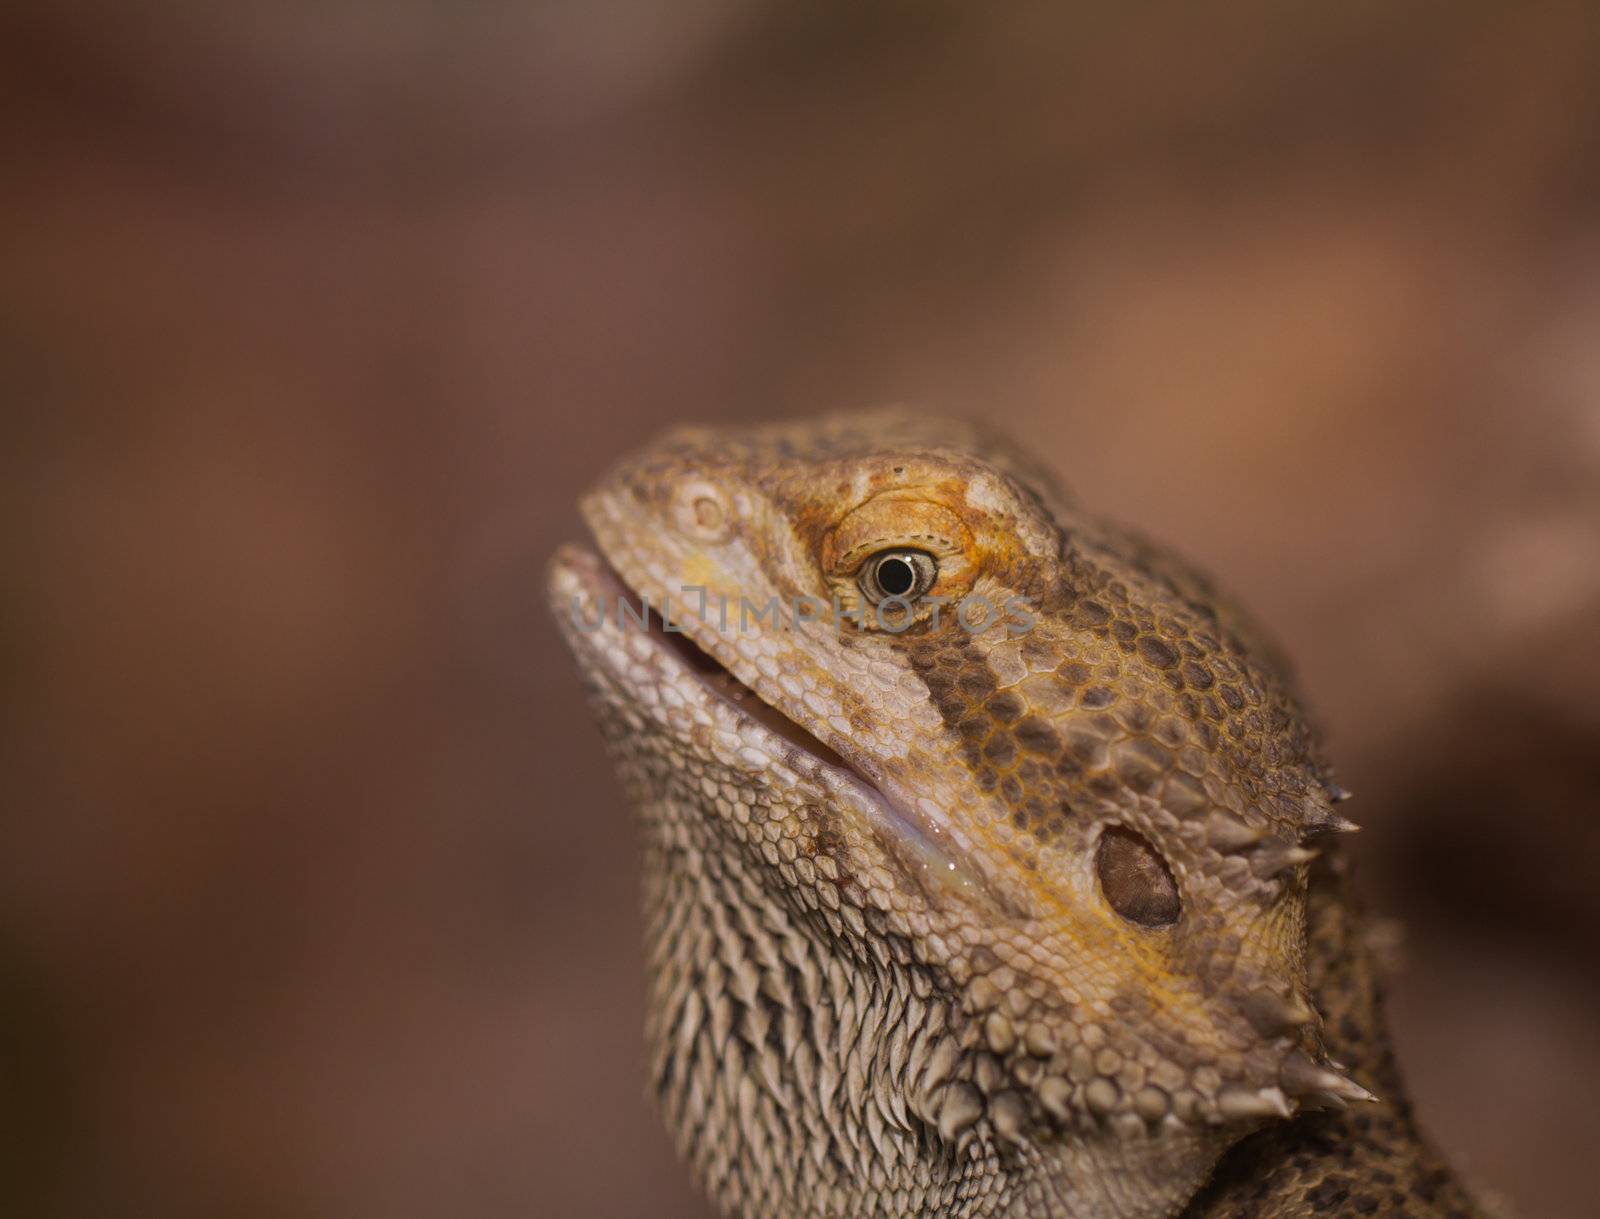 Close-up of Bearded dragons eye (Pogona vitticeps) by NagyDodo